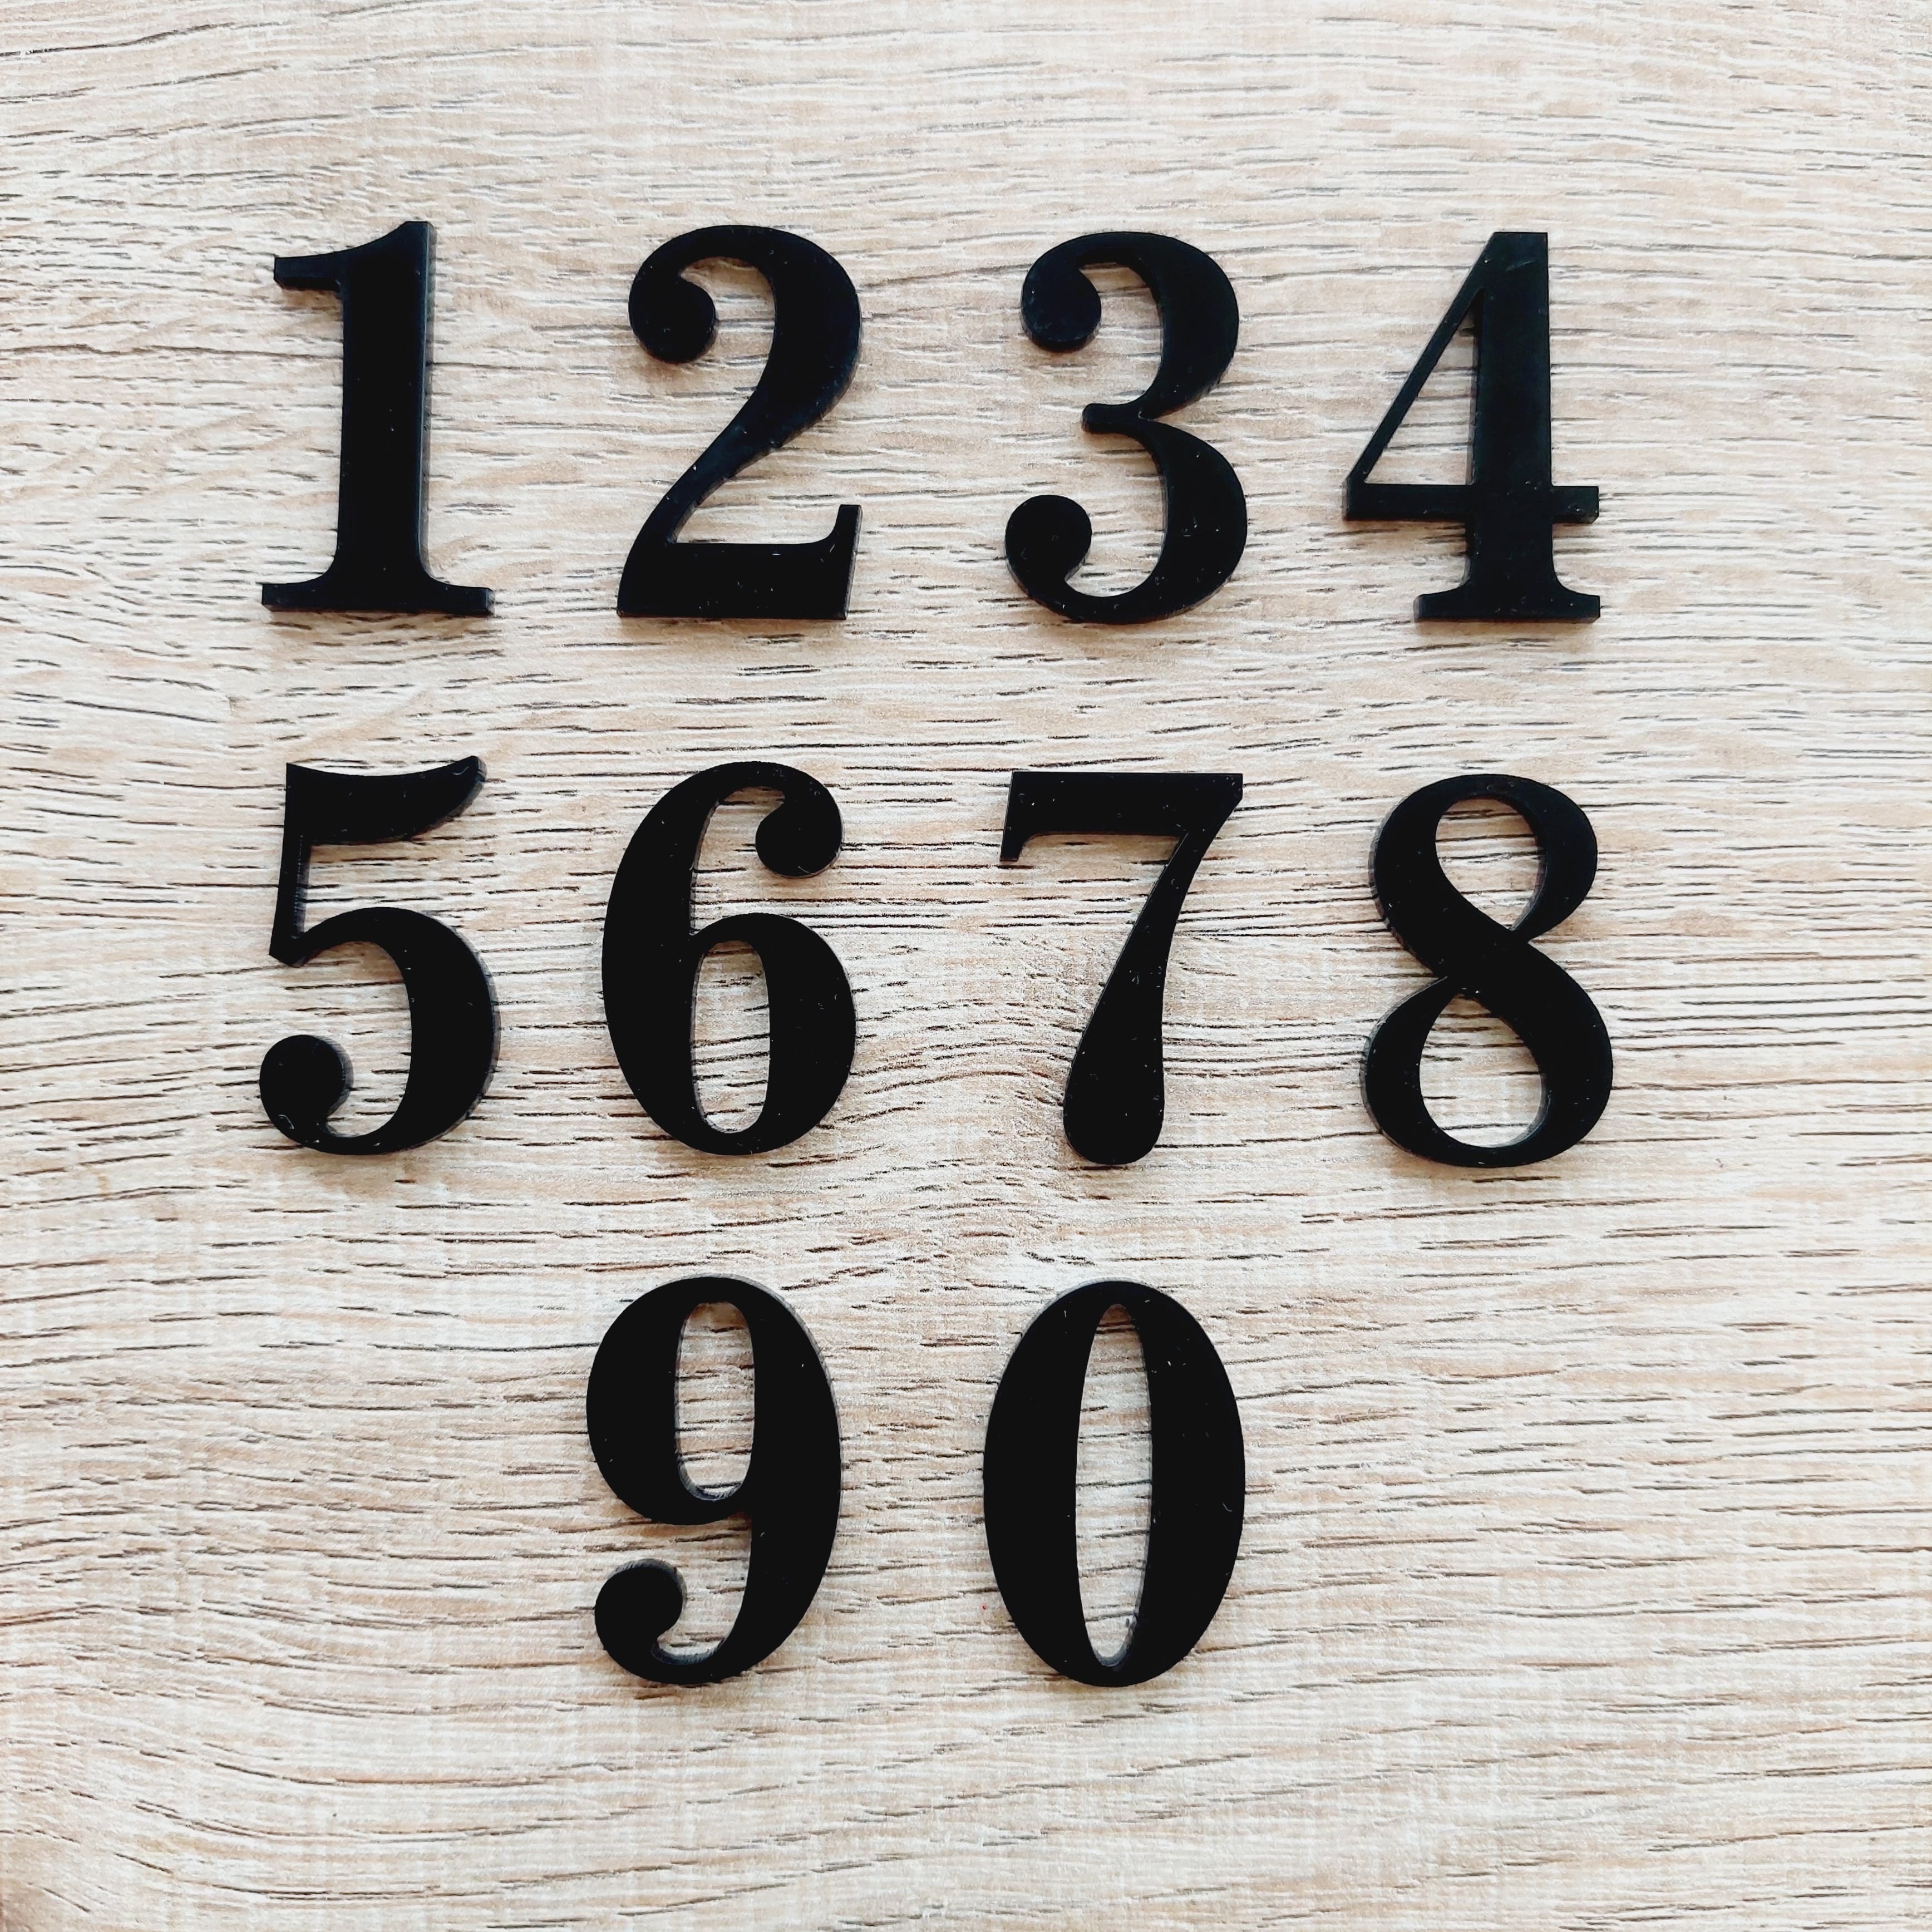 ตัวเลขที่บ้าน ตัวเลขที่ห้อง ตัวเลขอะคริลิค ขนาดสูง 7 cm